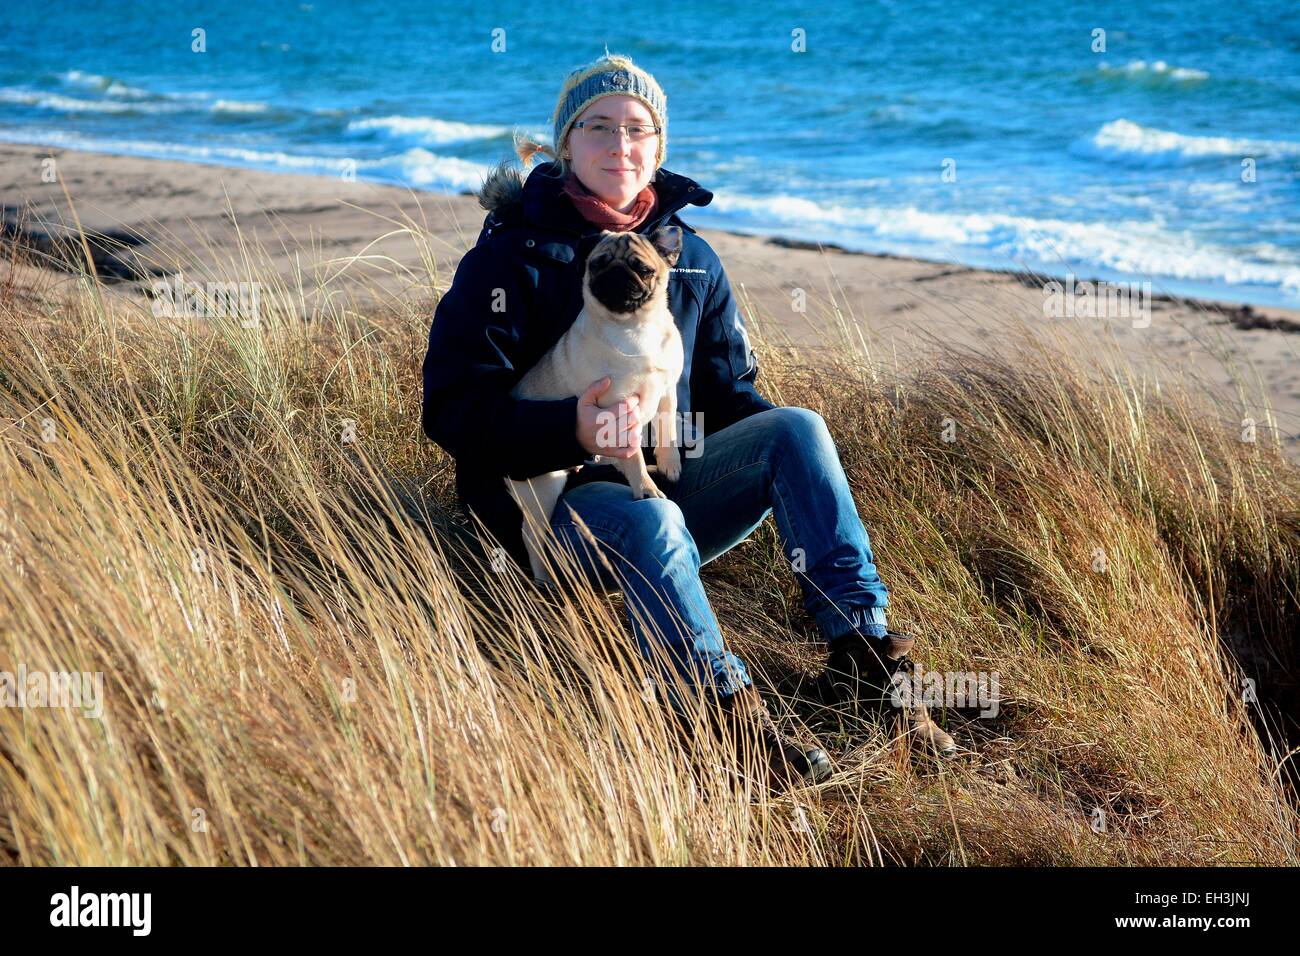 Jeune femme portant des vêtements d'hiver et la tenue d'un pug, assis dans l'herbe sèche à la mer Baltique, Scania, Suède Banque D'Images